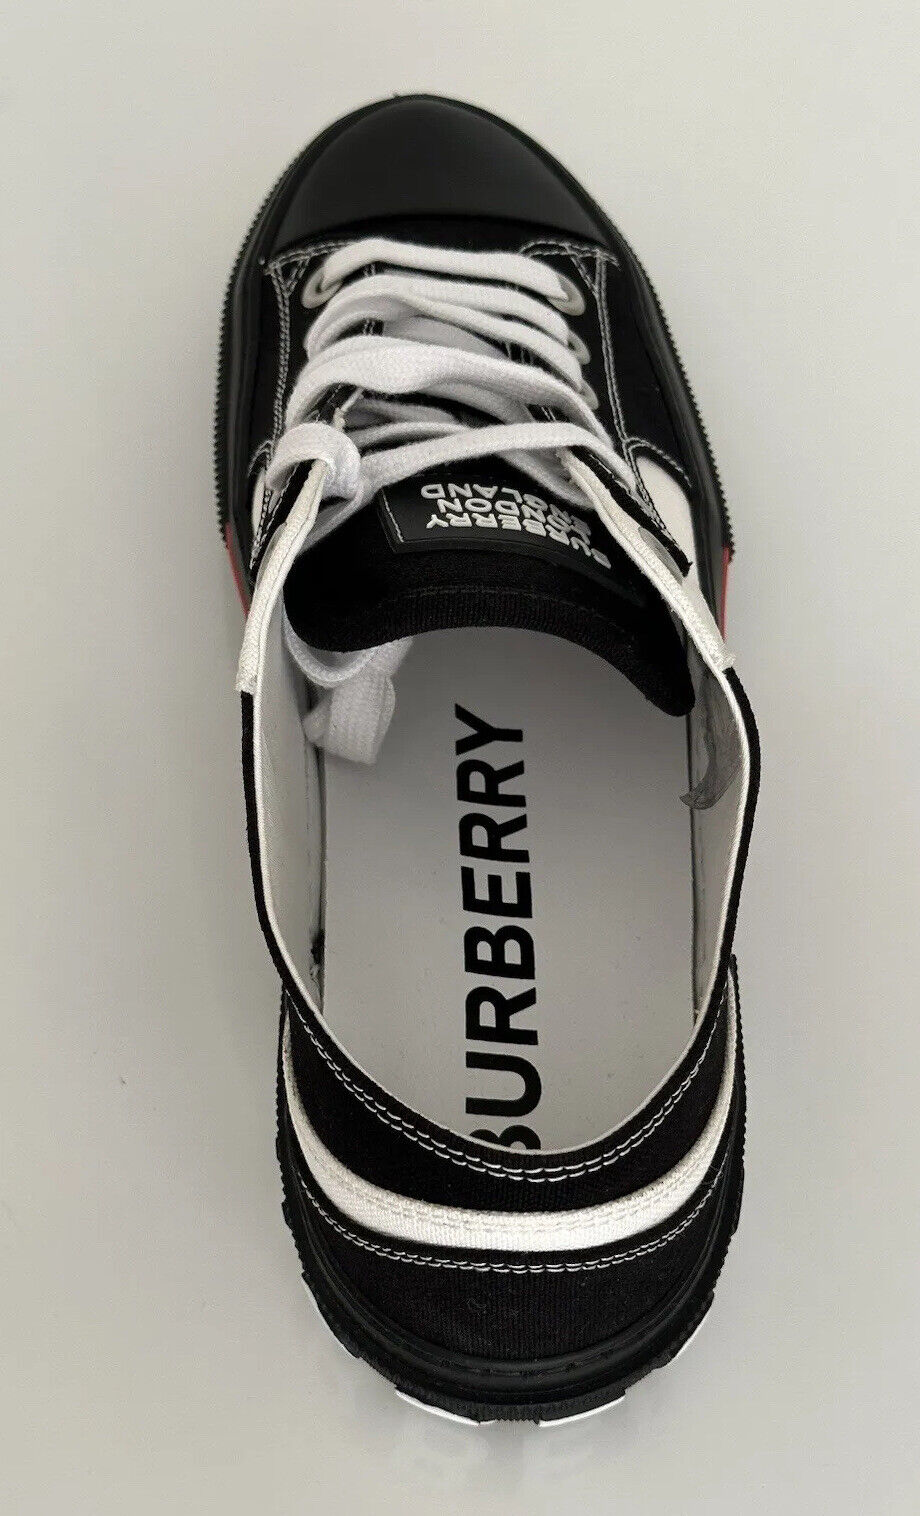 NIB 720 $ Burberry Herren-Low-Top-Sneaker in Schwarz/Weiß 10 US (43 Euro) 8056929 IT 